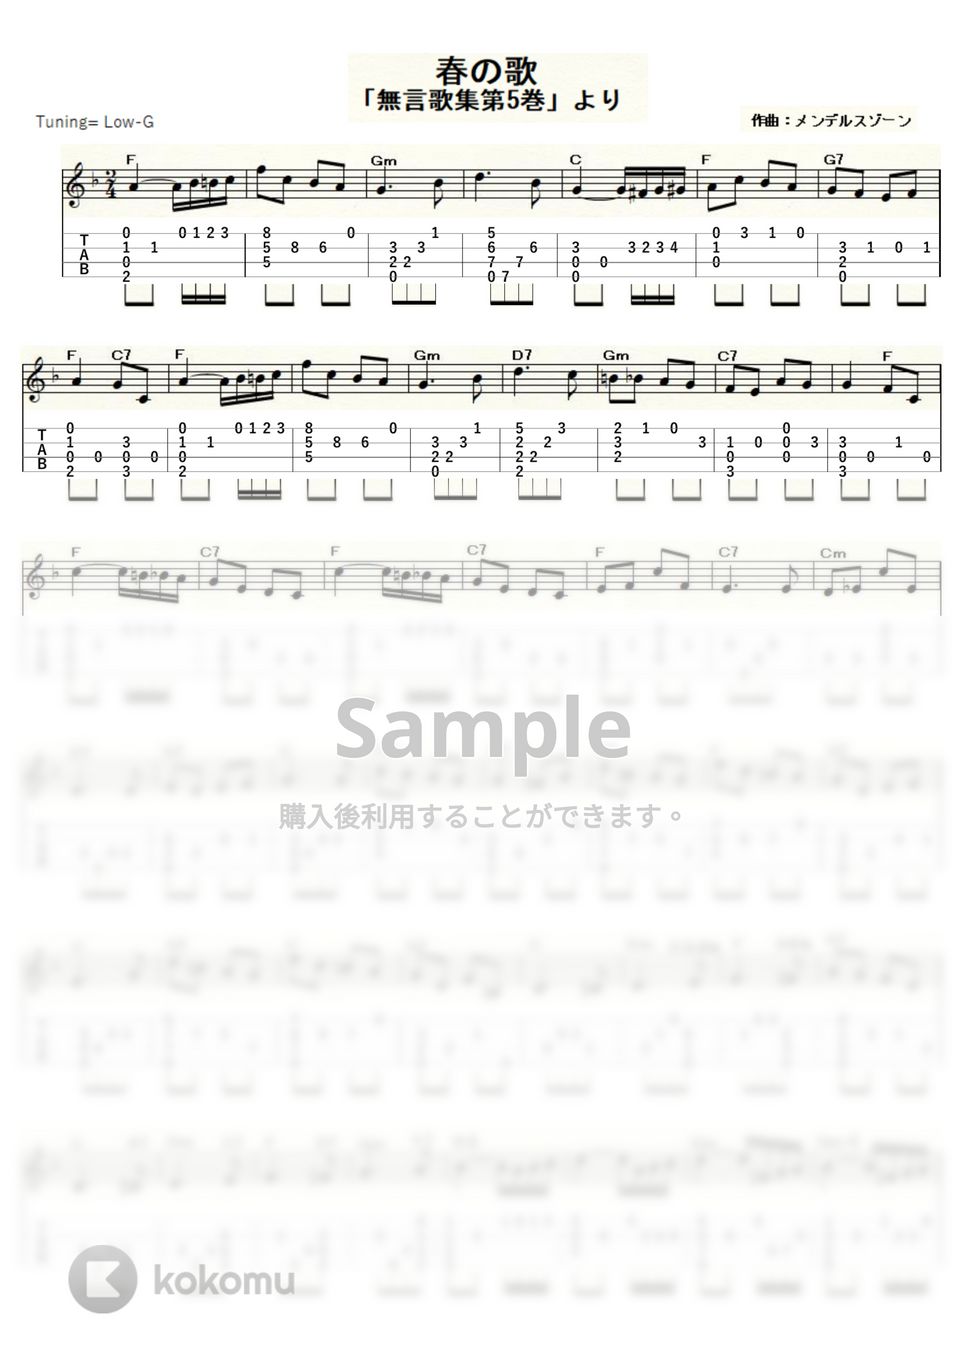 メンデルスゾーン - メンデルスゾーンの「春の歌」 (ｳｸﾚﾚｿﾛ / Low-G / 中級) by ukulelepapa